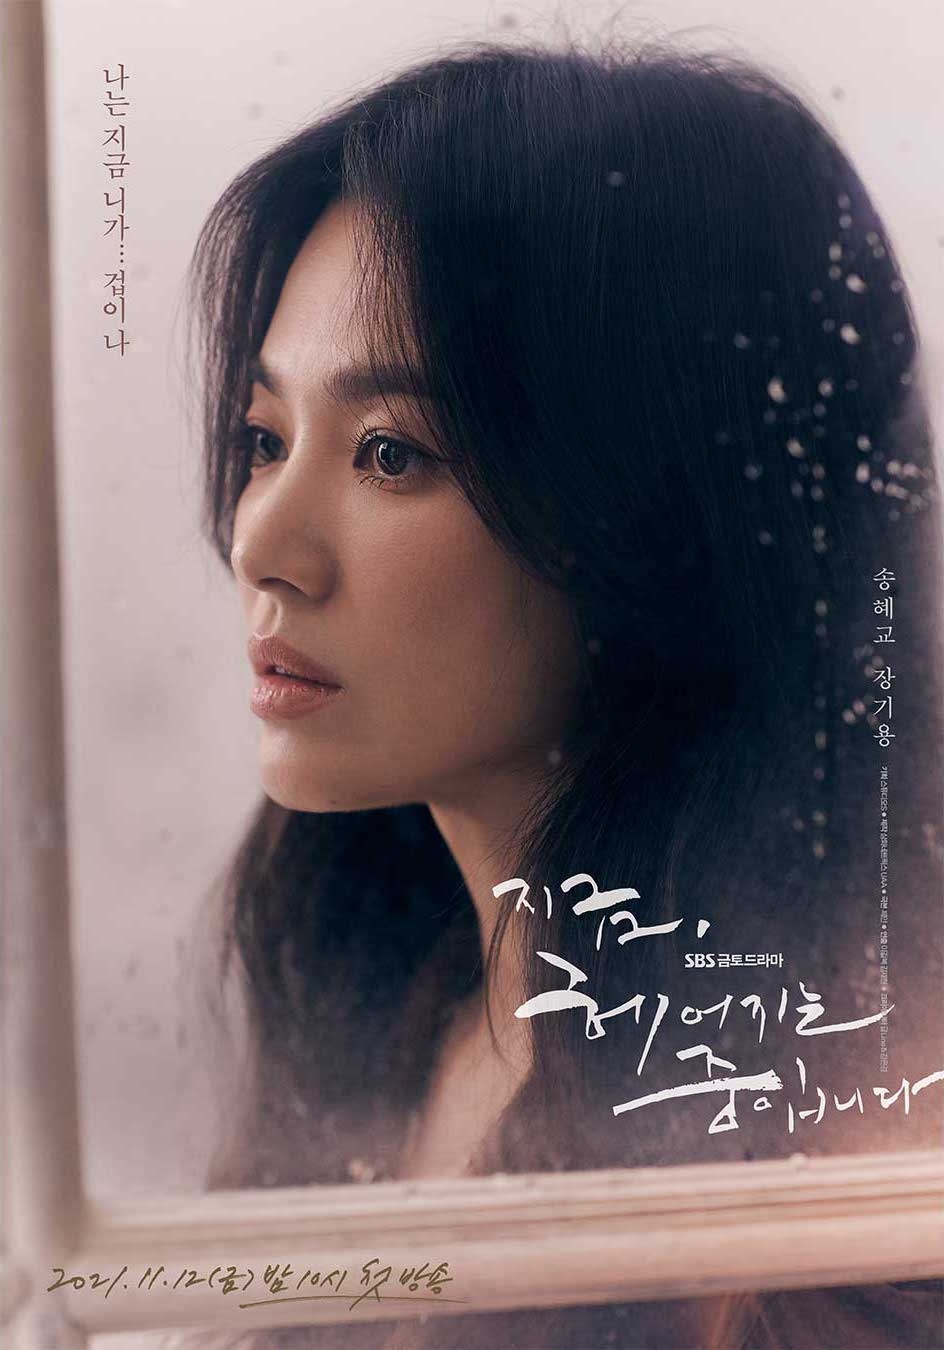 Phim mới của Song Hye Kyo ngay tập đầu đã dán nhãn 19+